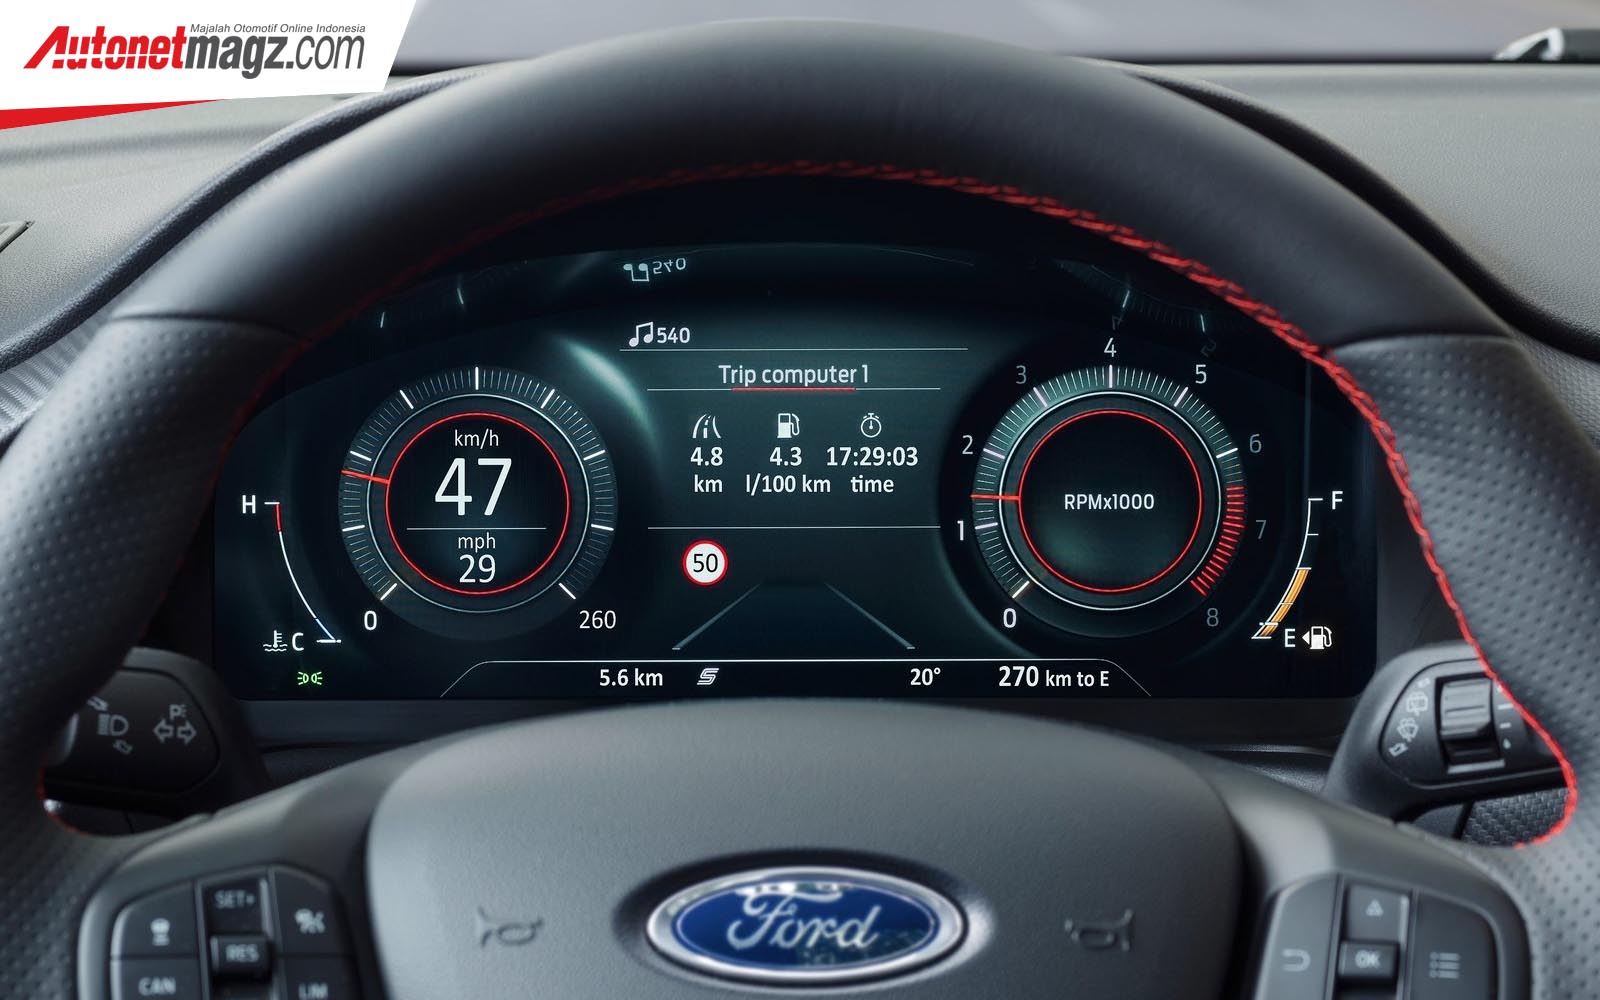 Berita, Fitur Ford Puma 2020: Ford Puma 2020 : CUV Unyu Dengan Mesin 152 hp & Transmisi Manual 6 Speed!